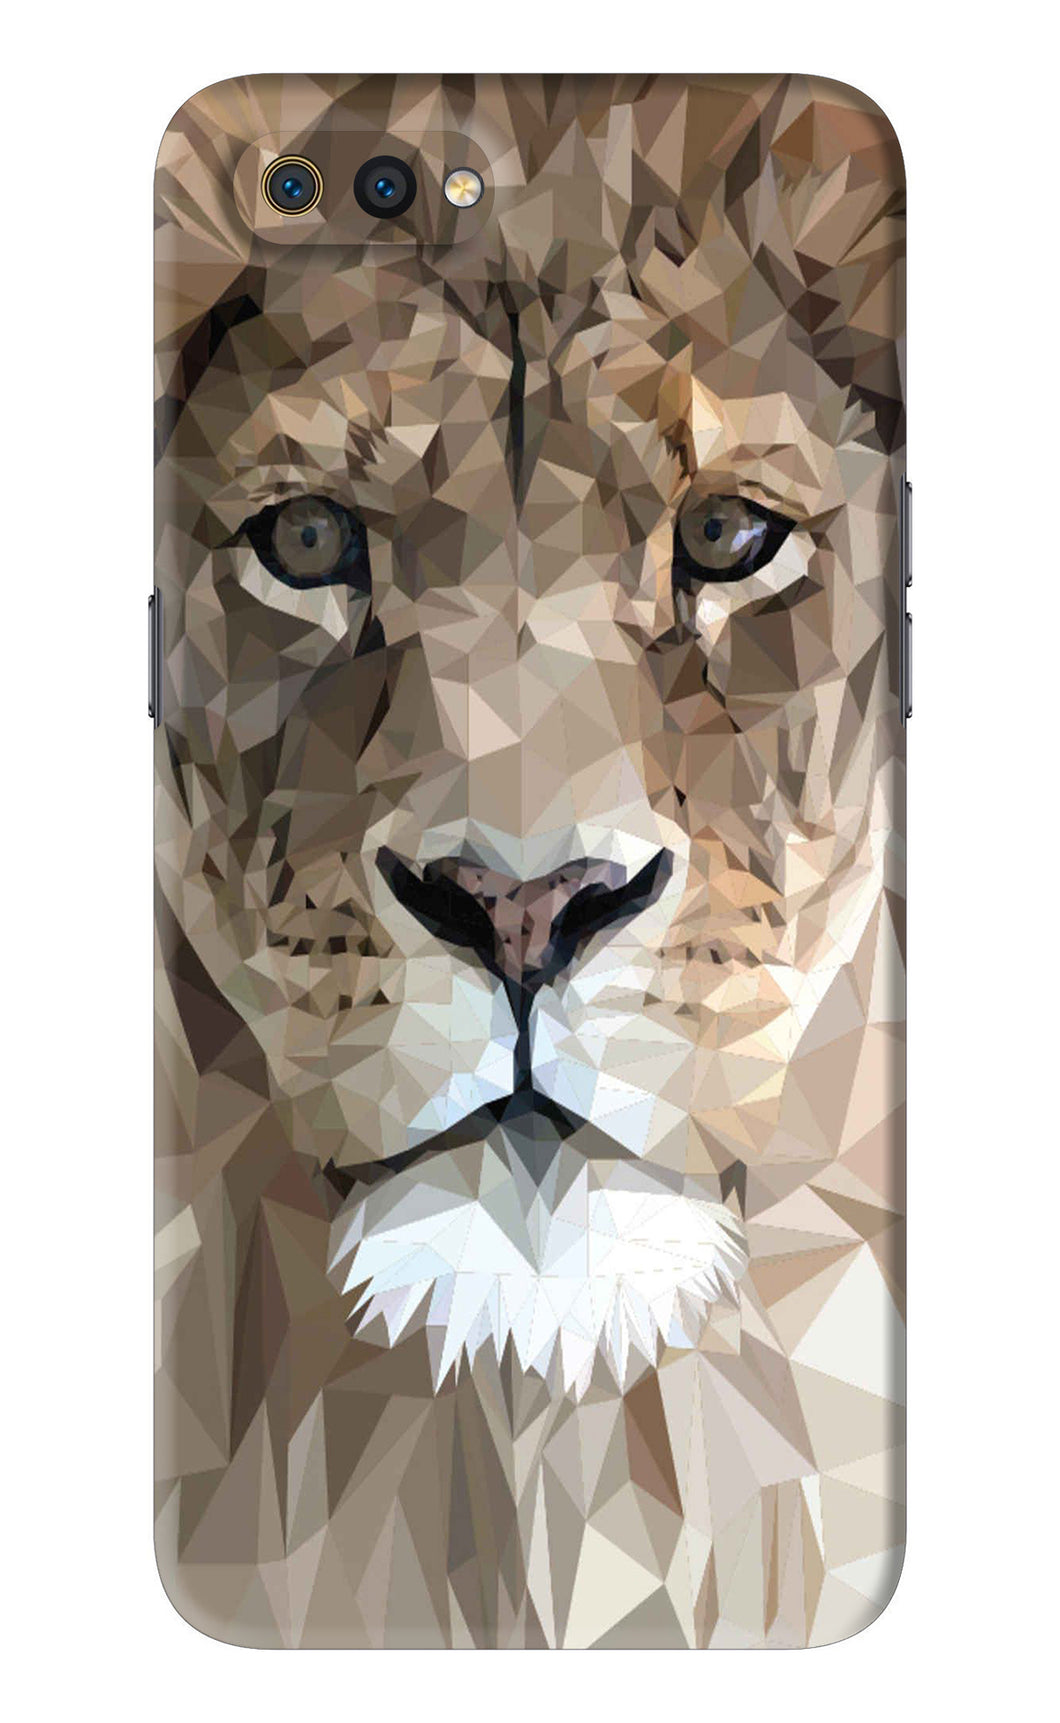 Lion Art Realme C2 Back Skin Wrap